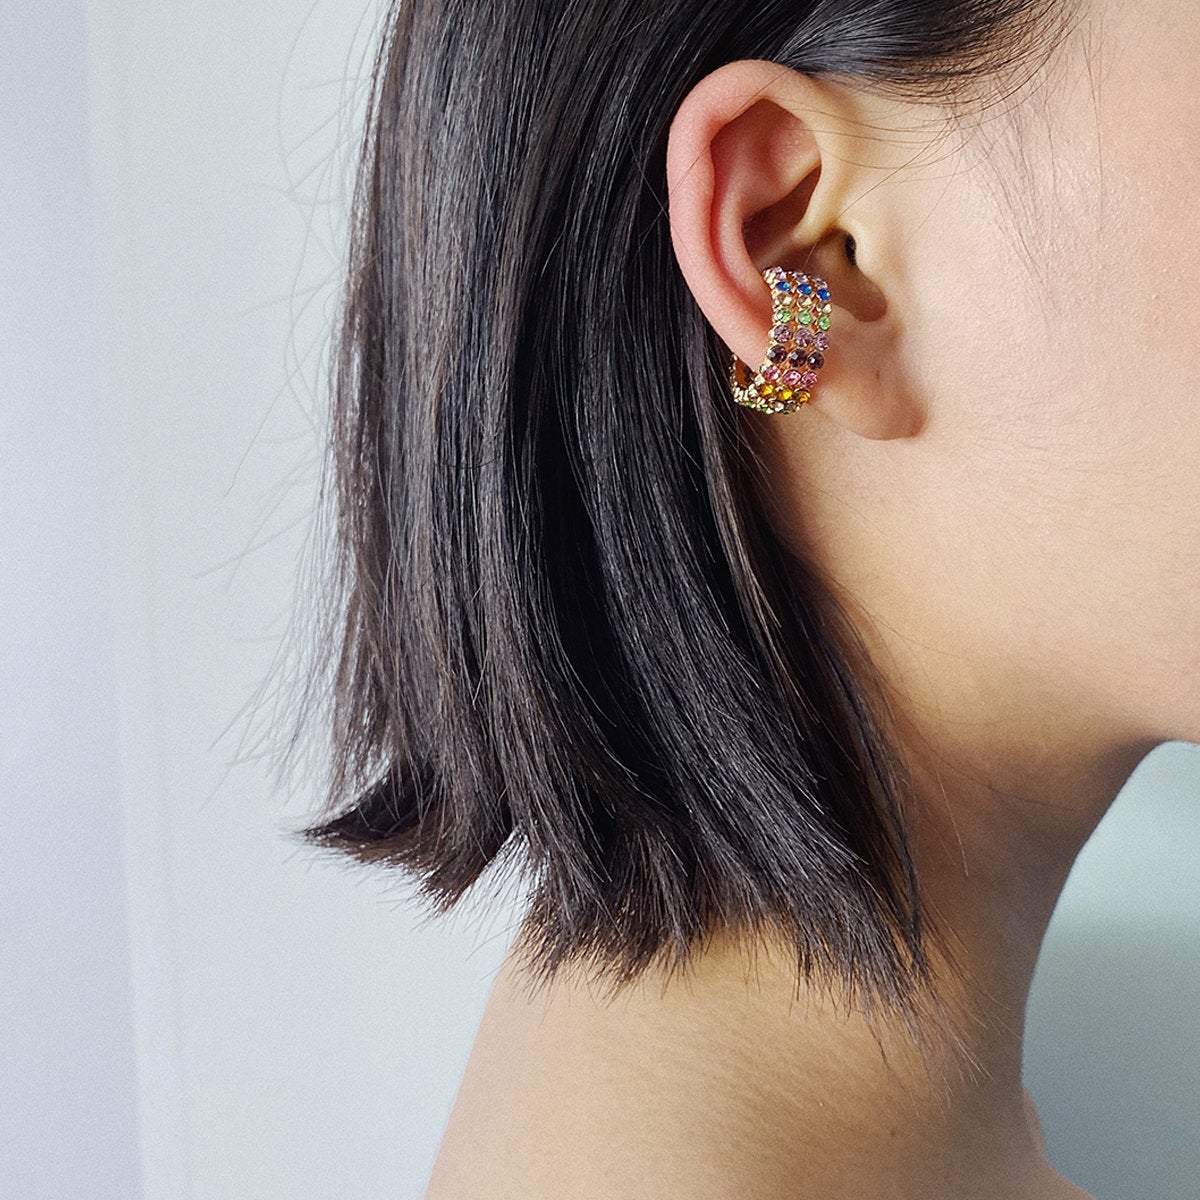 Crystal Inlaid Small Hoop Huggie Earrings Ear Cuffs - Minimalist Non Pierced Ear Cuff Earrings - ArtGalleryZen